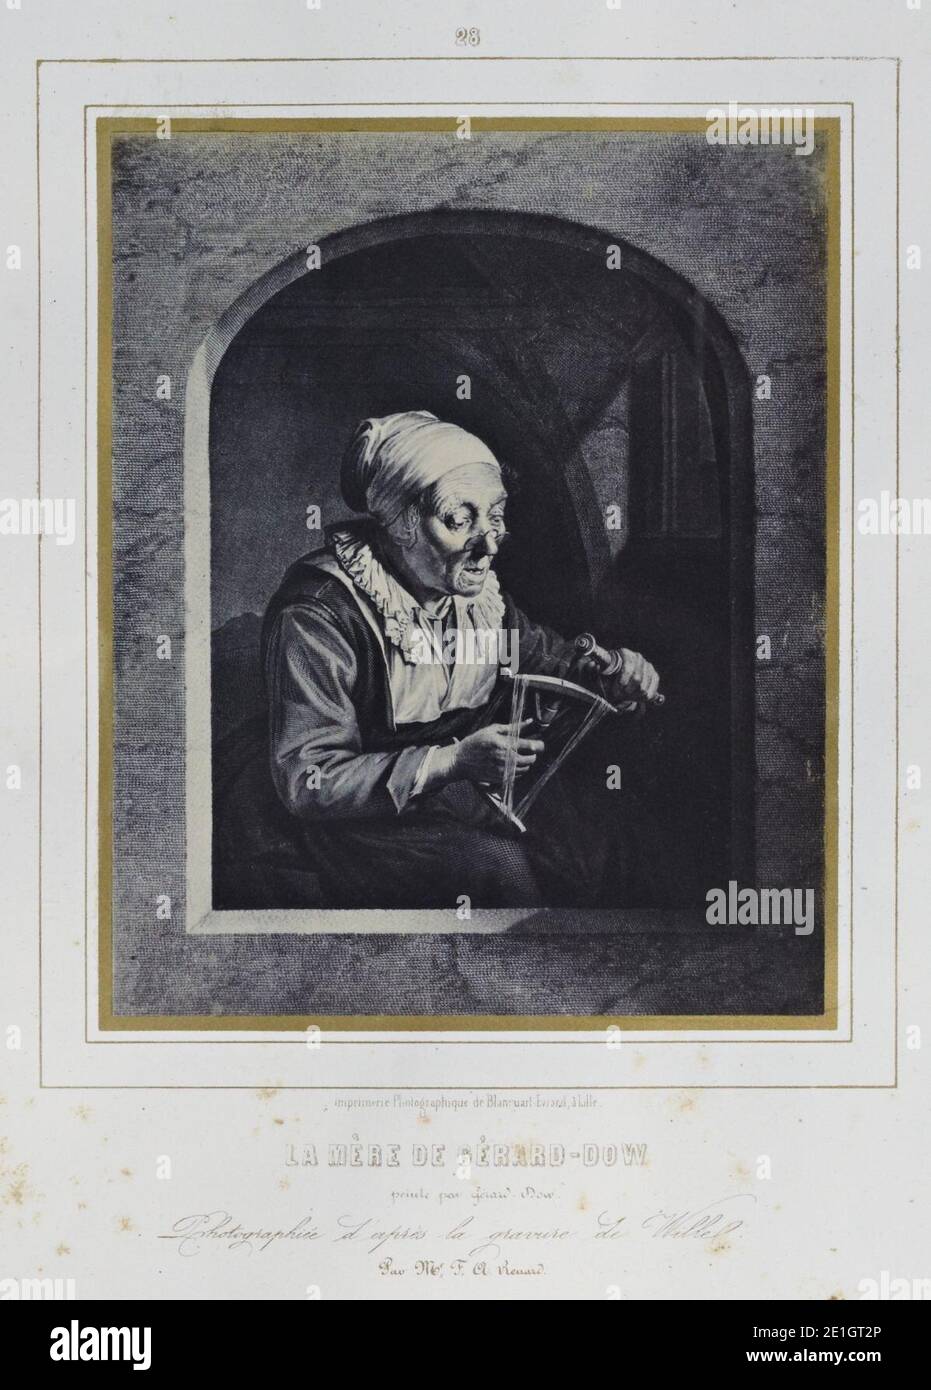 Louis Désiré Blanquart-Evrard, Album fotografico de l'artiste et de l'amateur, planche 28, la Mère de Gérard-Dow. Foto Stock